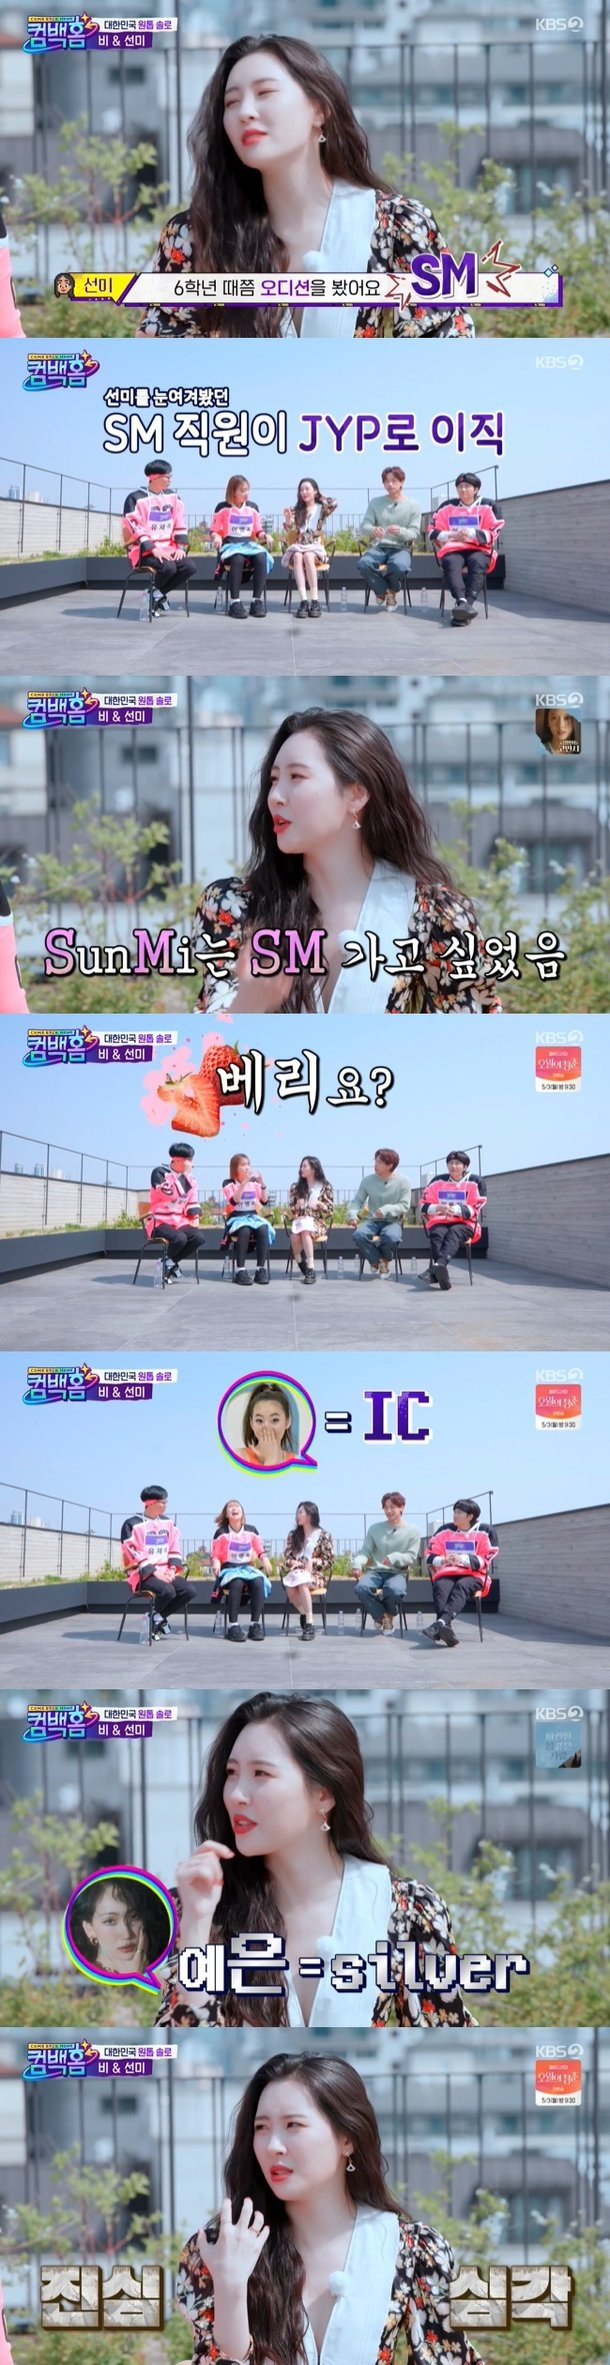 Сонми рассказала о желании попасть в SM Entertainment и изначальных псевдонимах Wonder Girls